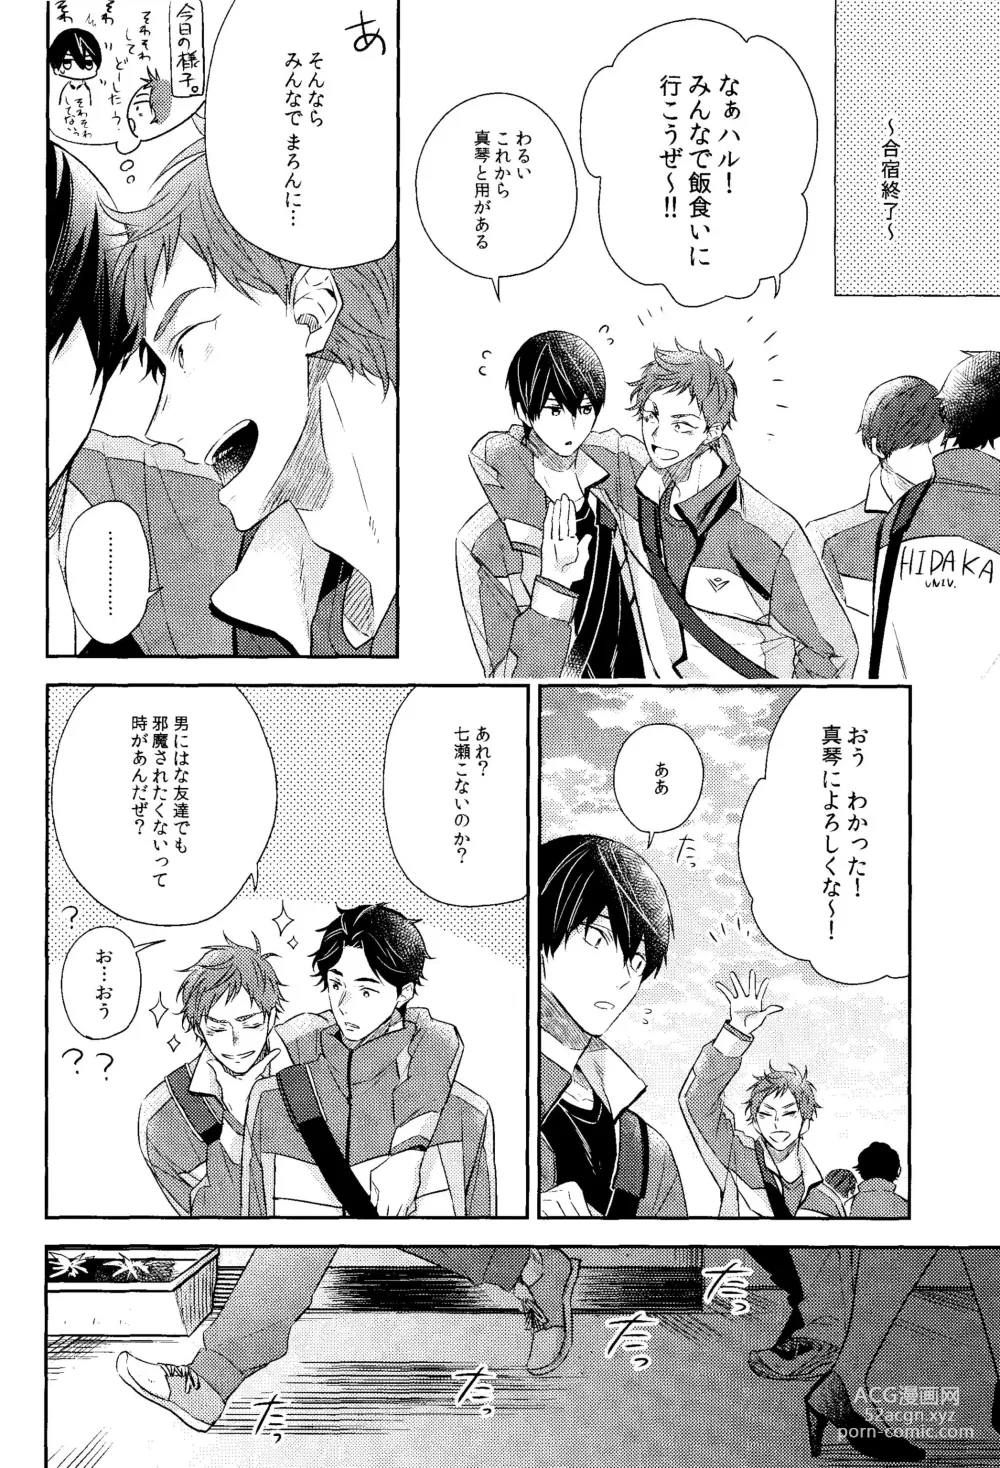 Page 5 of doujinshi Kare Knit to Makoto to Haruka.